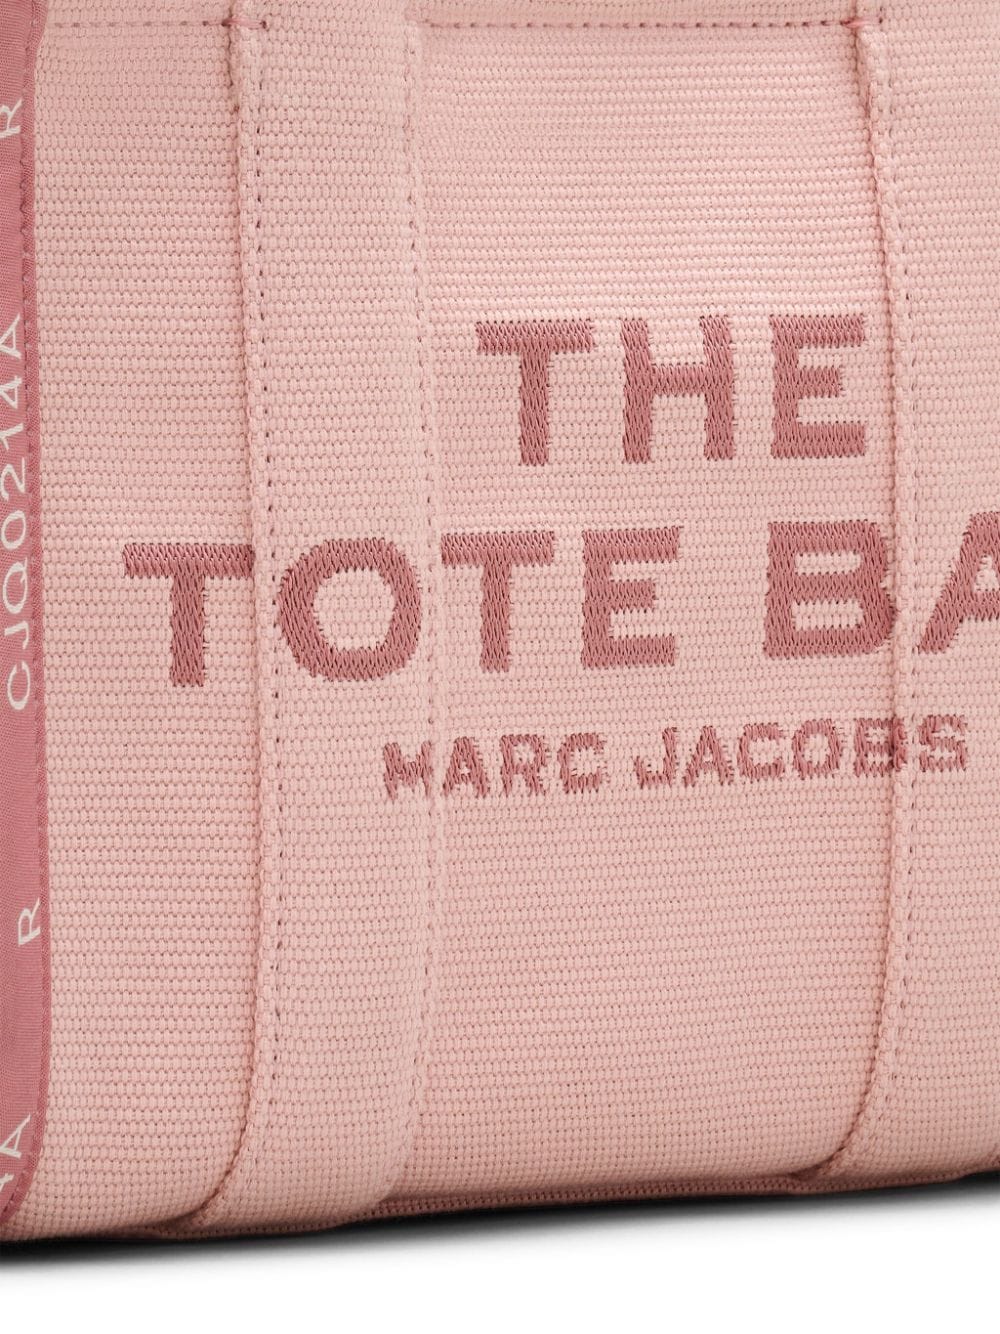 Marc Jacobs The Jacquard kleine shopper Roze